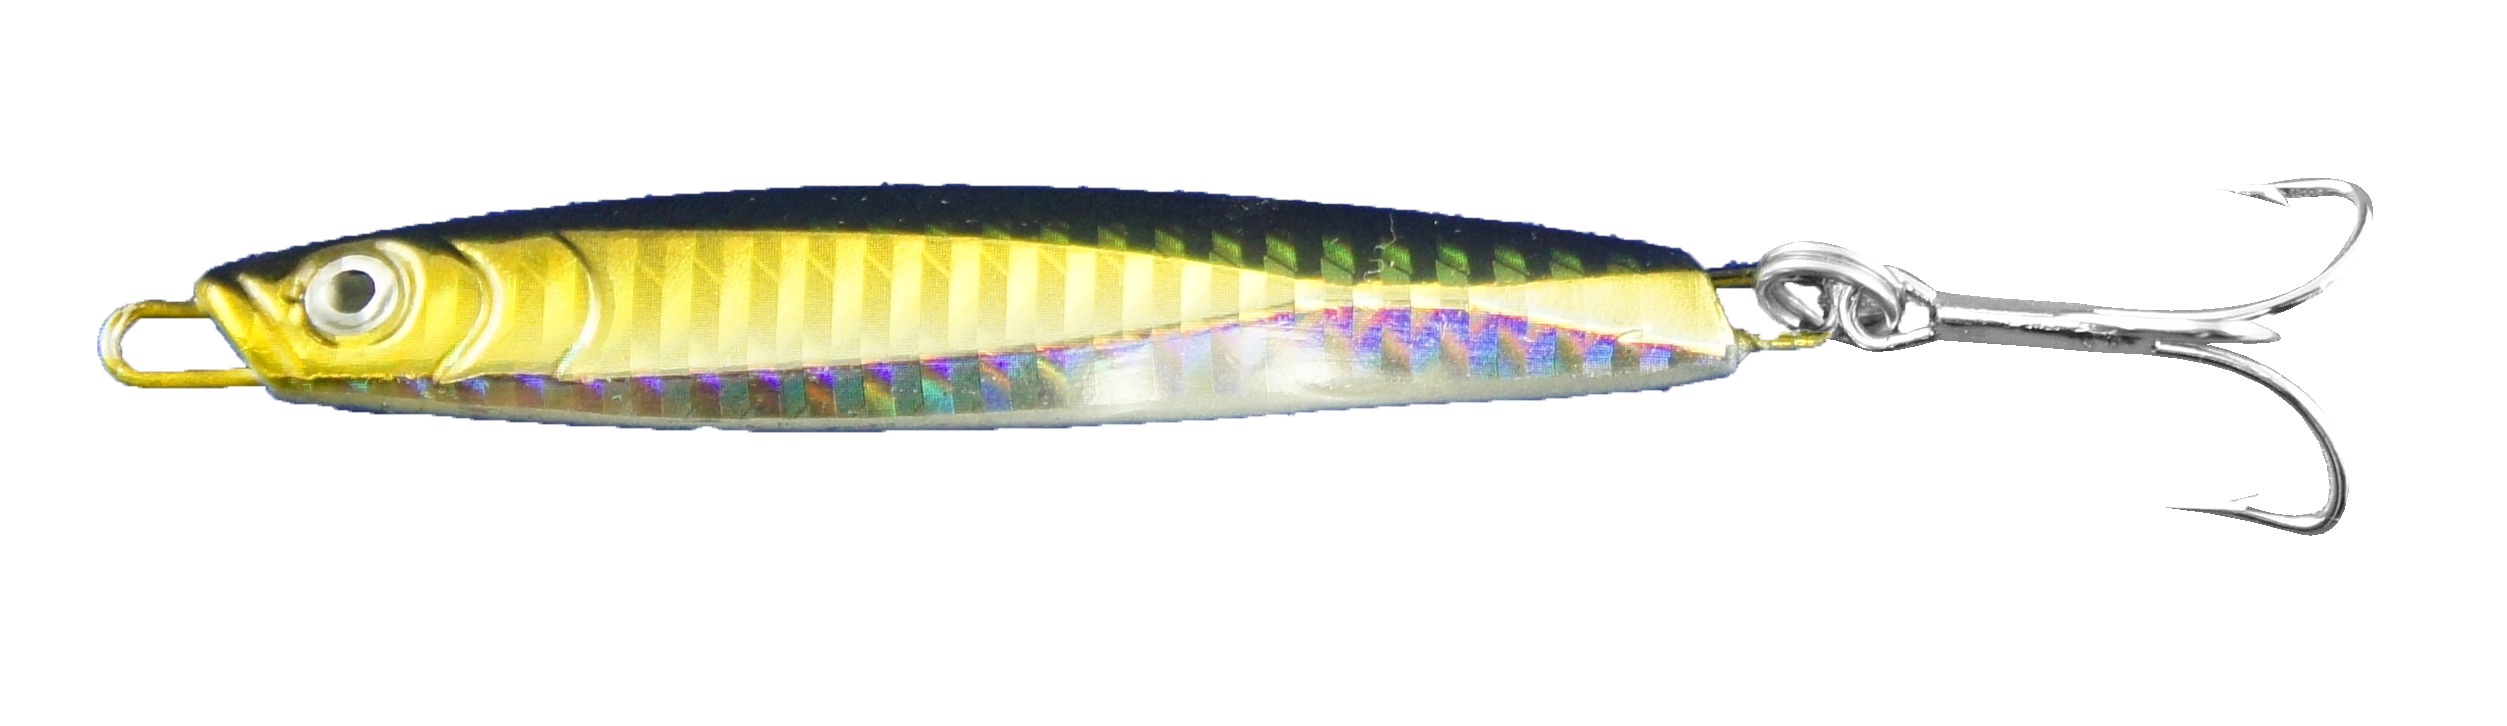 Dennett Super SPRAT mer Spinner Leurres nouveaux petits poissons couleur vendu en paquets de 2 